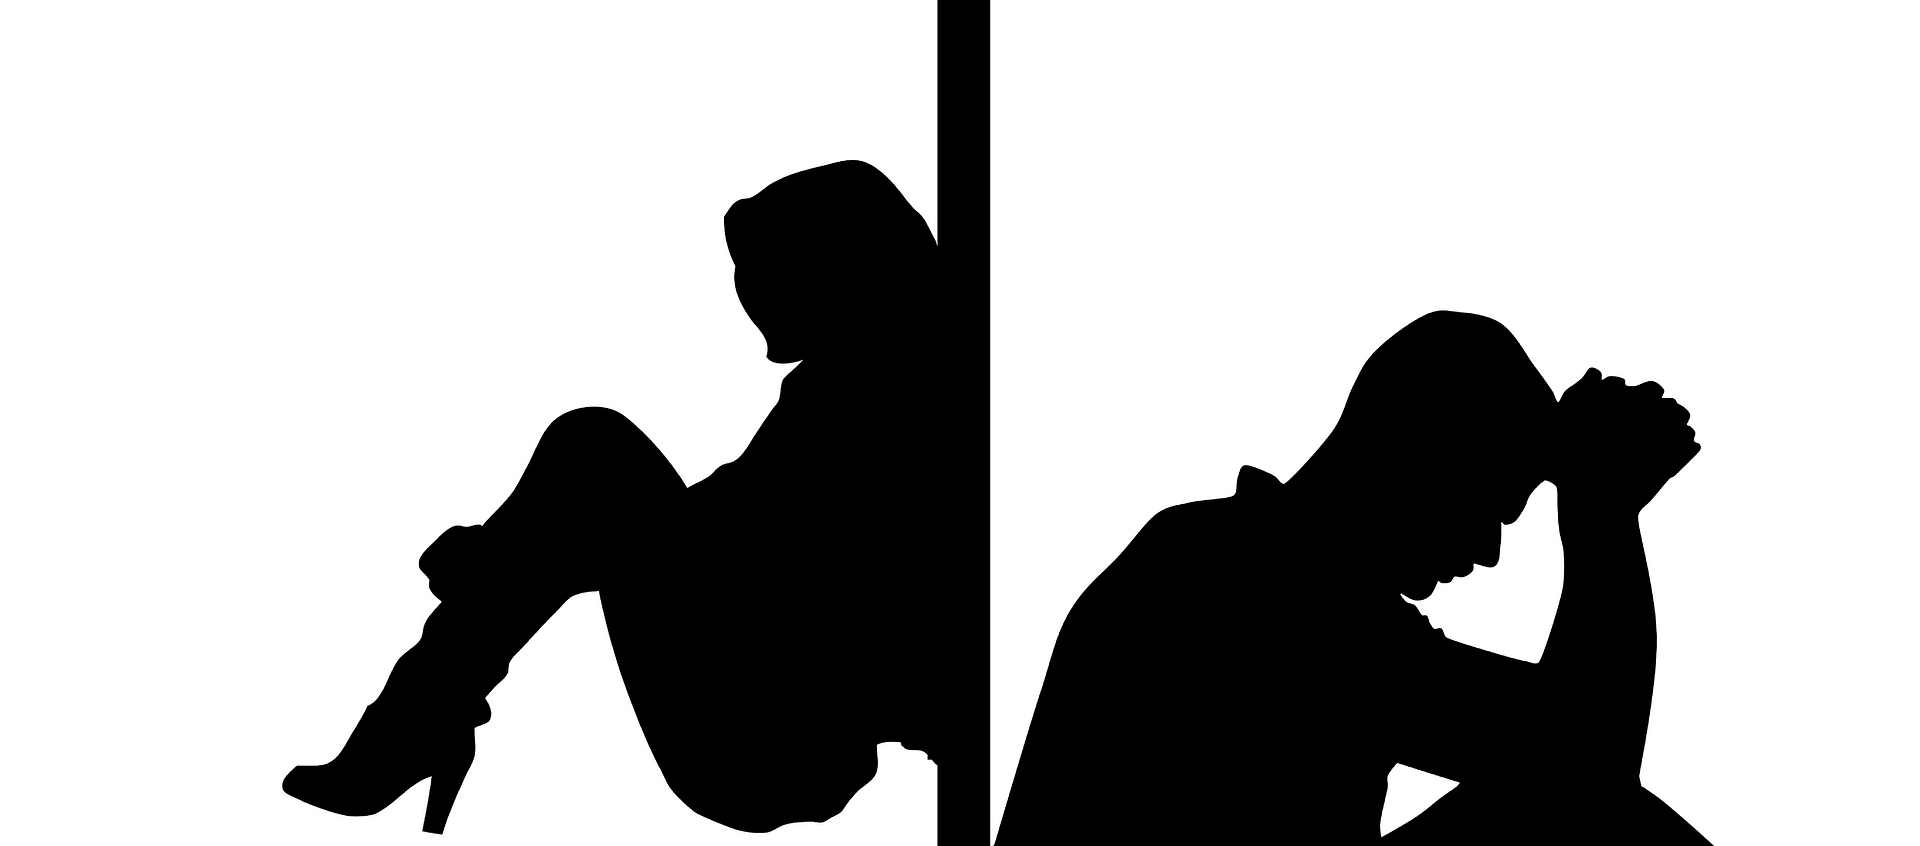 dwie postacie siedza tyłem do siebie przedstawiaja kobiete i meżczyzne